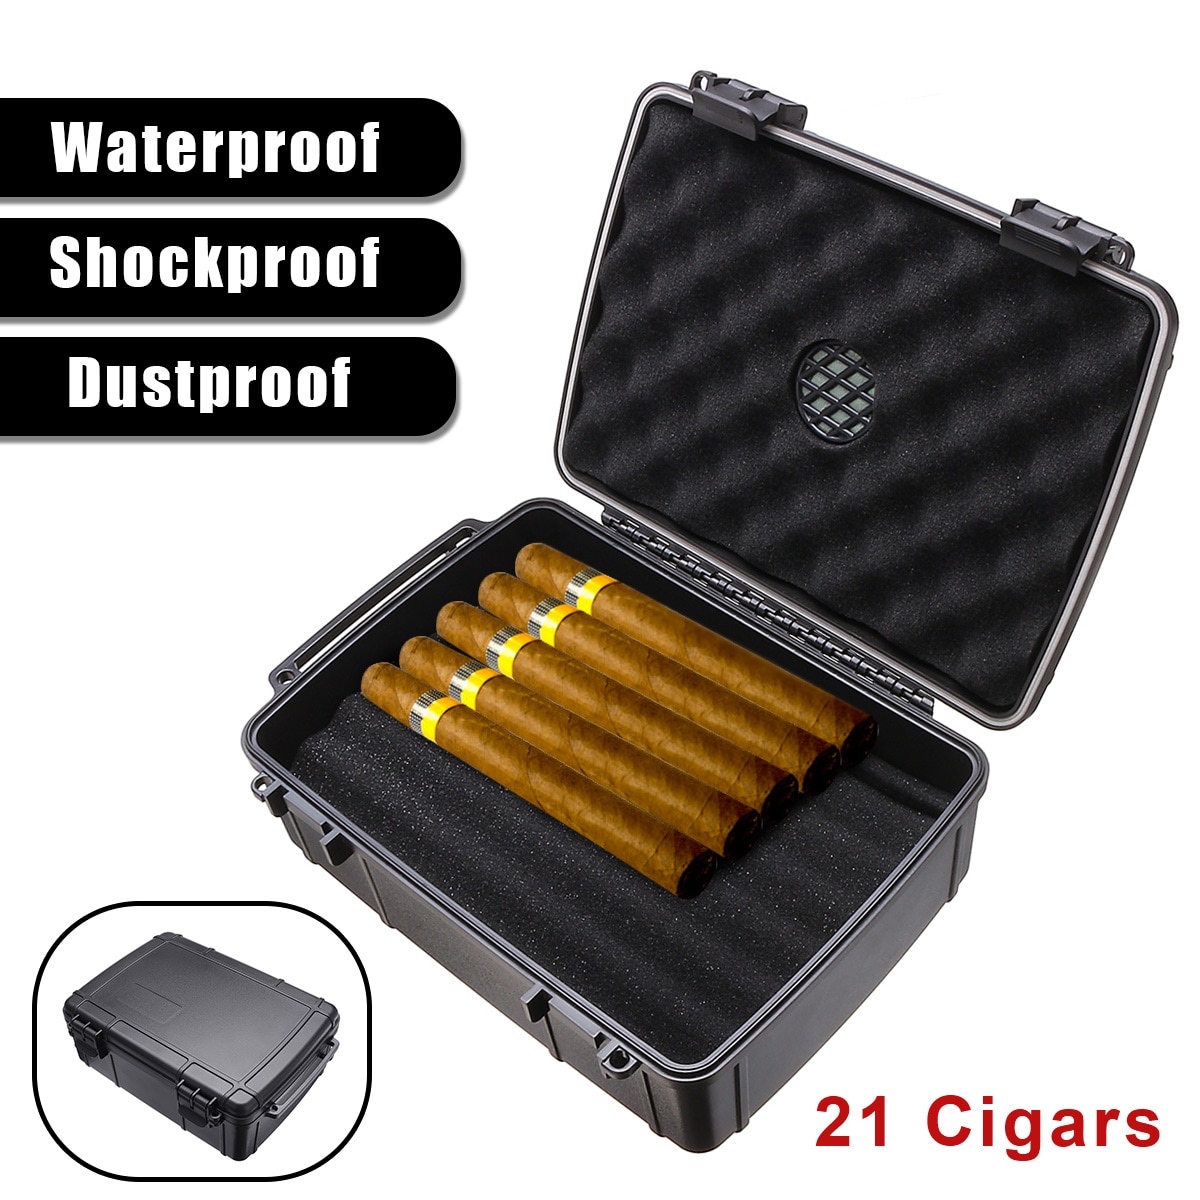 Waterproof Travel Cigar Case & Humidor • The Gentleman's Flavor